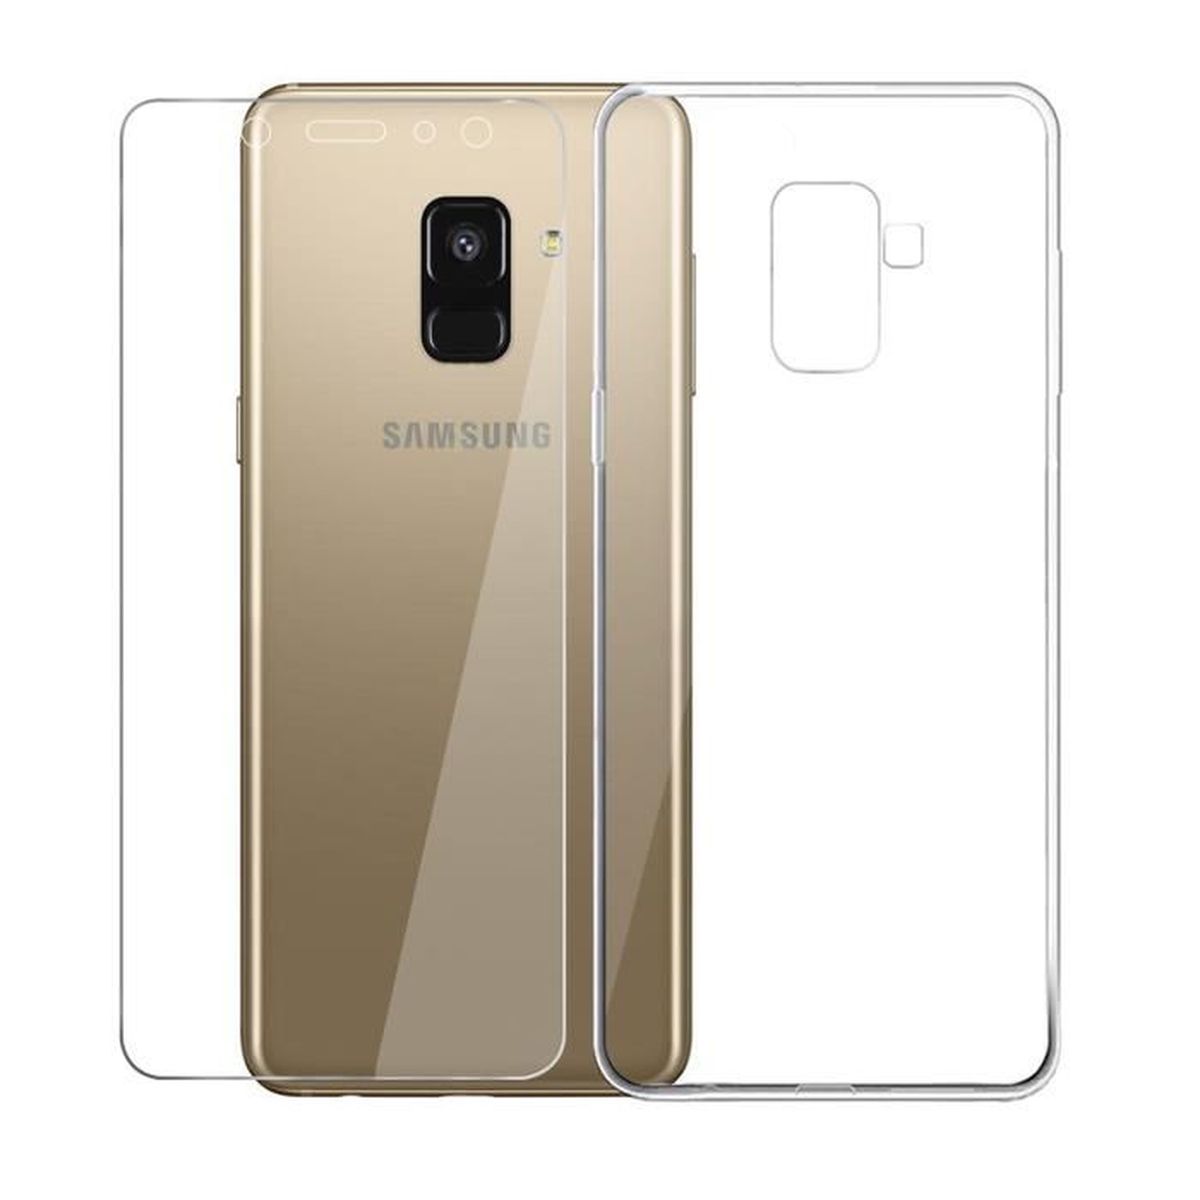 Lanveni Lot de 3 Coque Samsung Galaxy A6 Plumes // A6 Plus 2018 Soft Housse /étui de Protection en TPU Souple Silicone Transparent Slim Antichoc Thin Fine Mince Premium l/éger